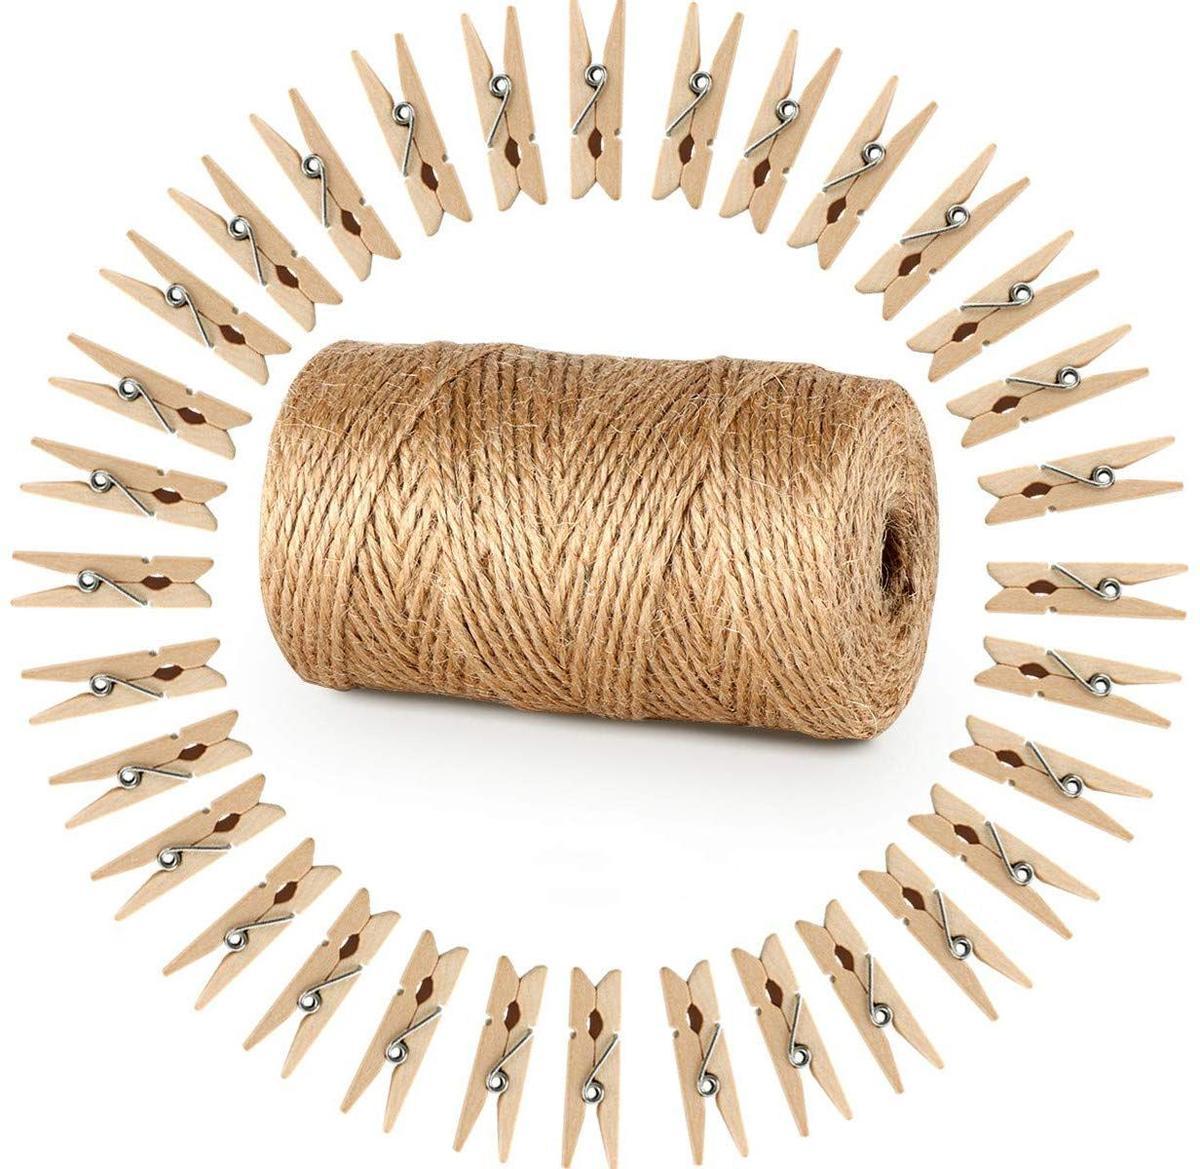 Cuerda de cáñamo más pinzas de madera (Precio: 9,89 euros)